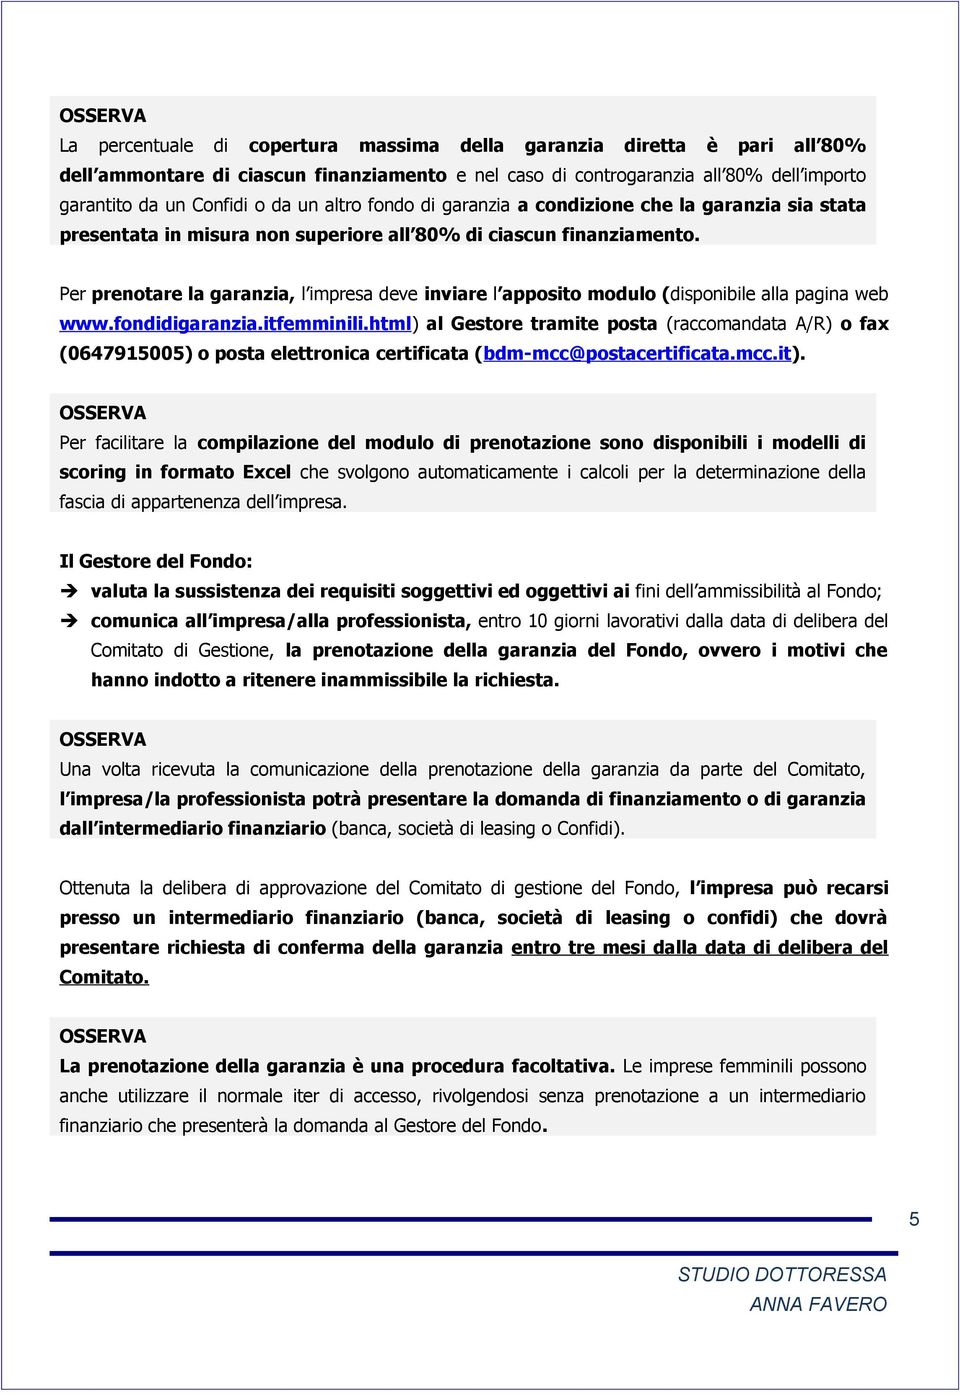 Per prenotare la garanzia, l impresa deve inviare l apposito modulo (disponibile alla pagina web www.fondidigaranzia.itfemminili.